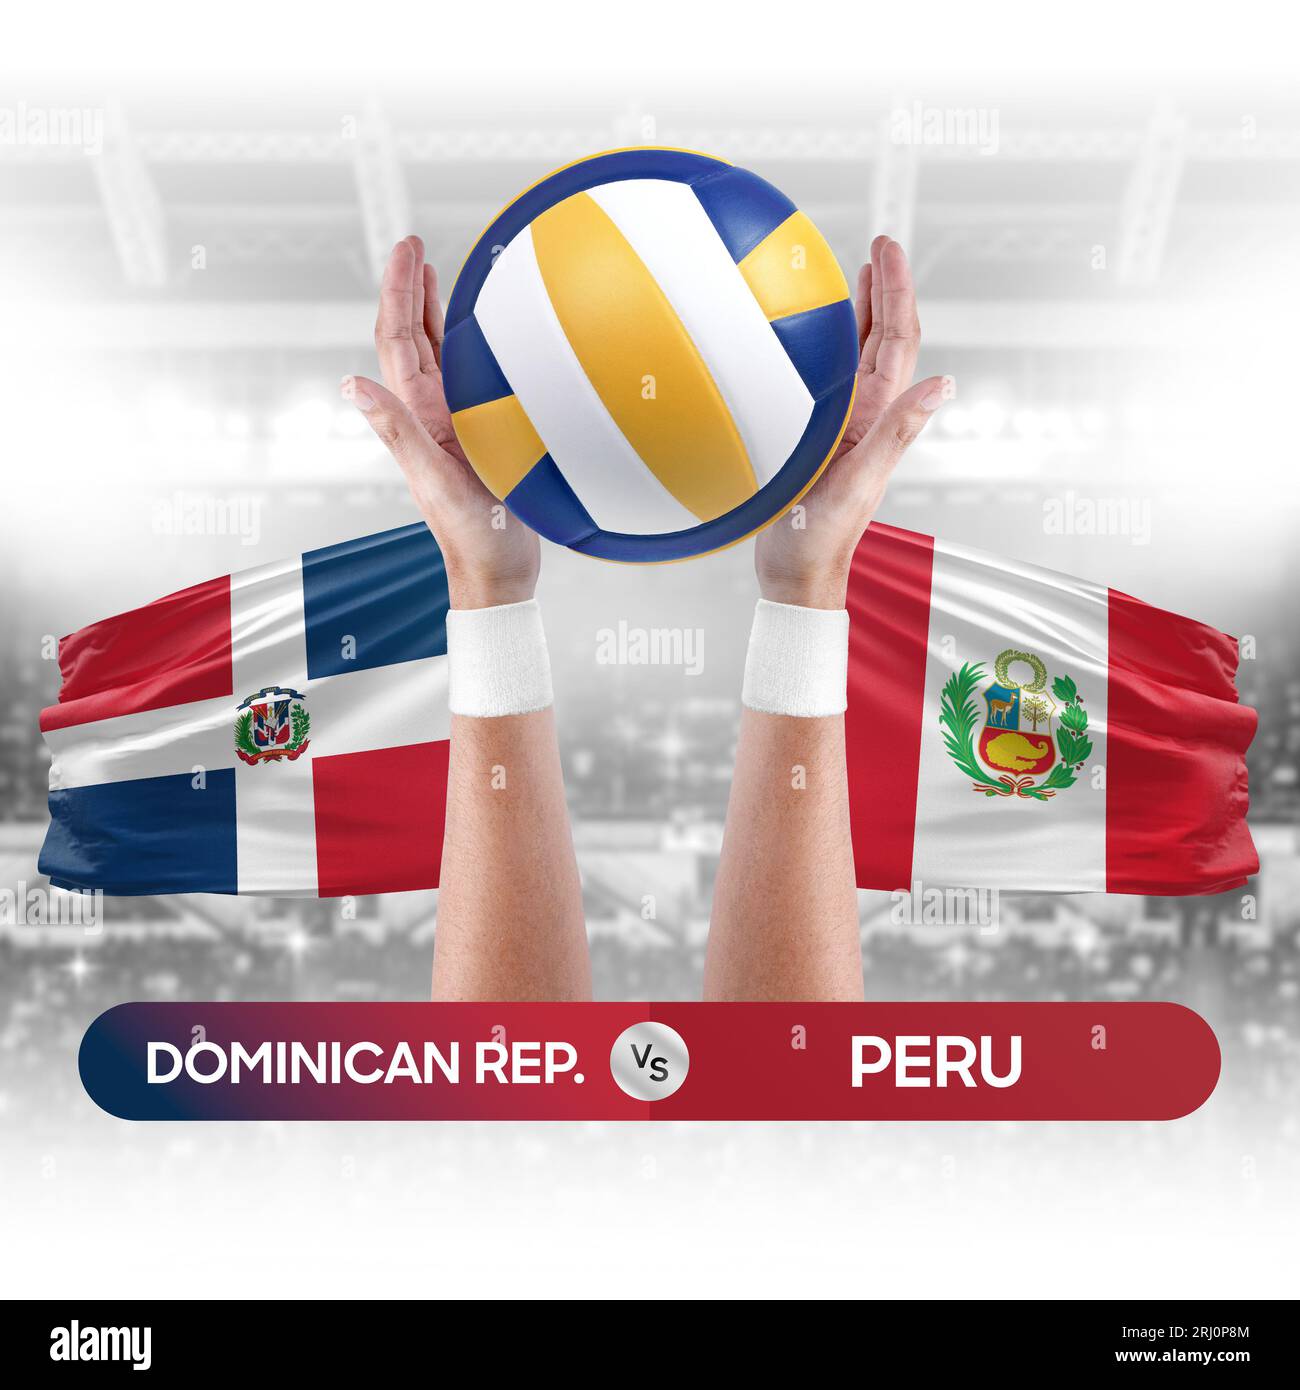 République dominicaine vs Pérou équipe nationale de volley-ball concept de compétition de match de volley-ball. Banque D'Images